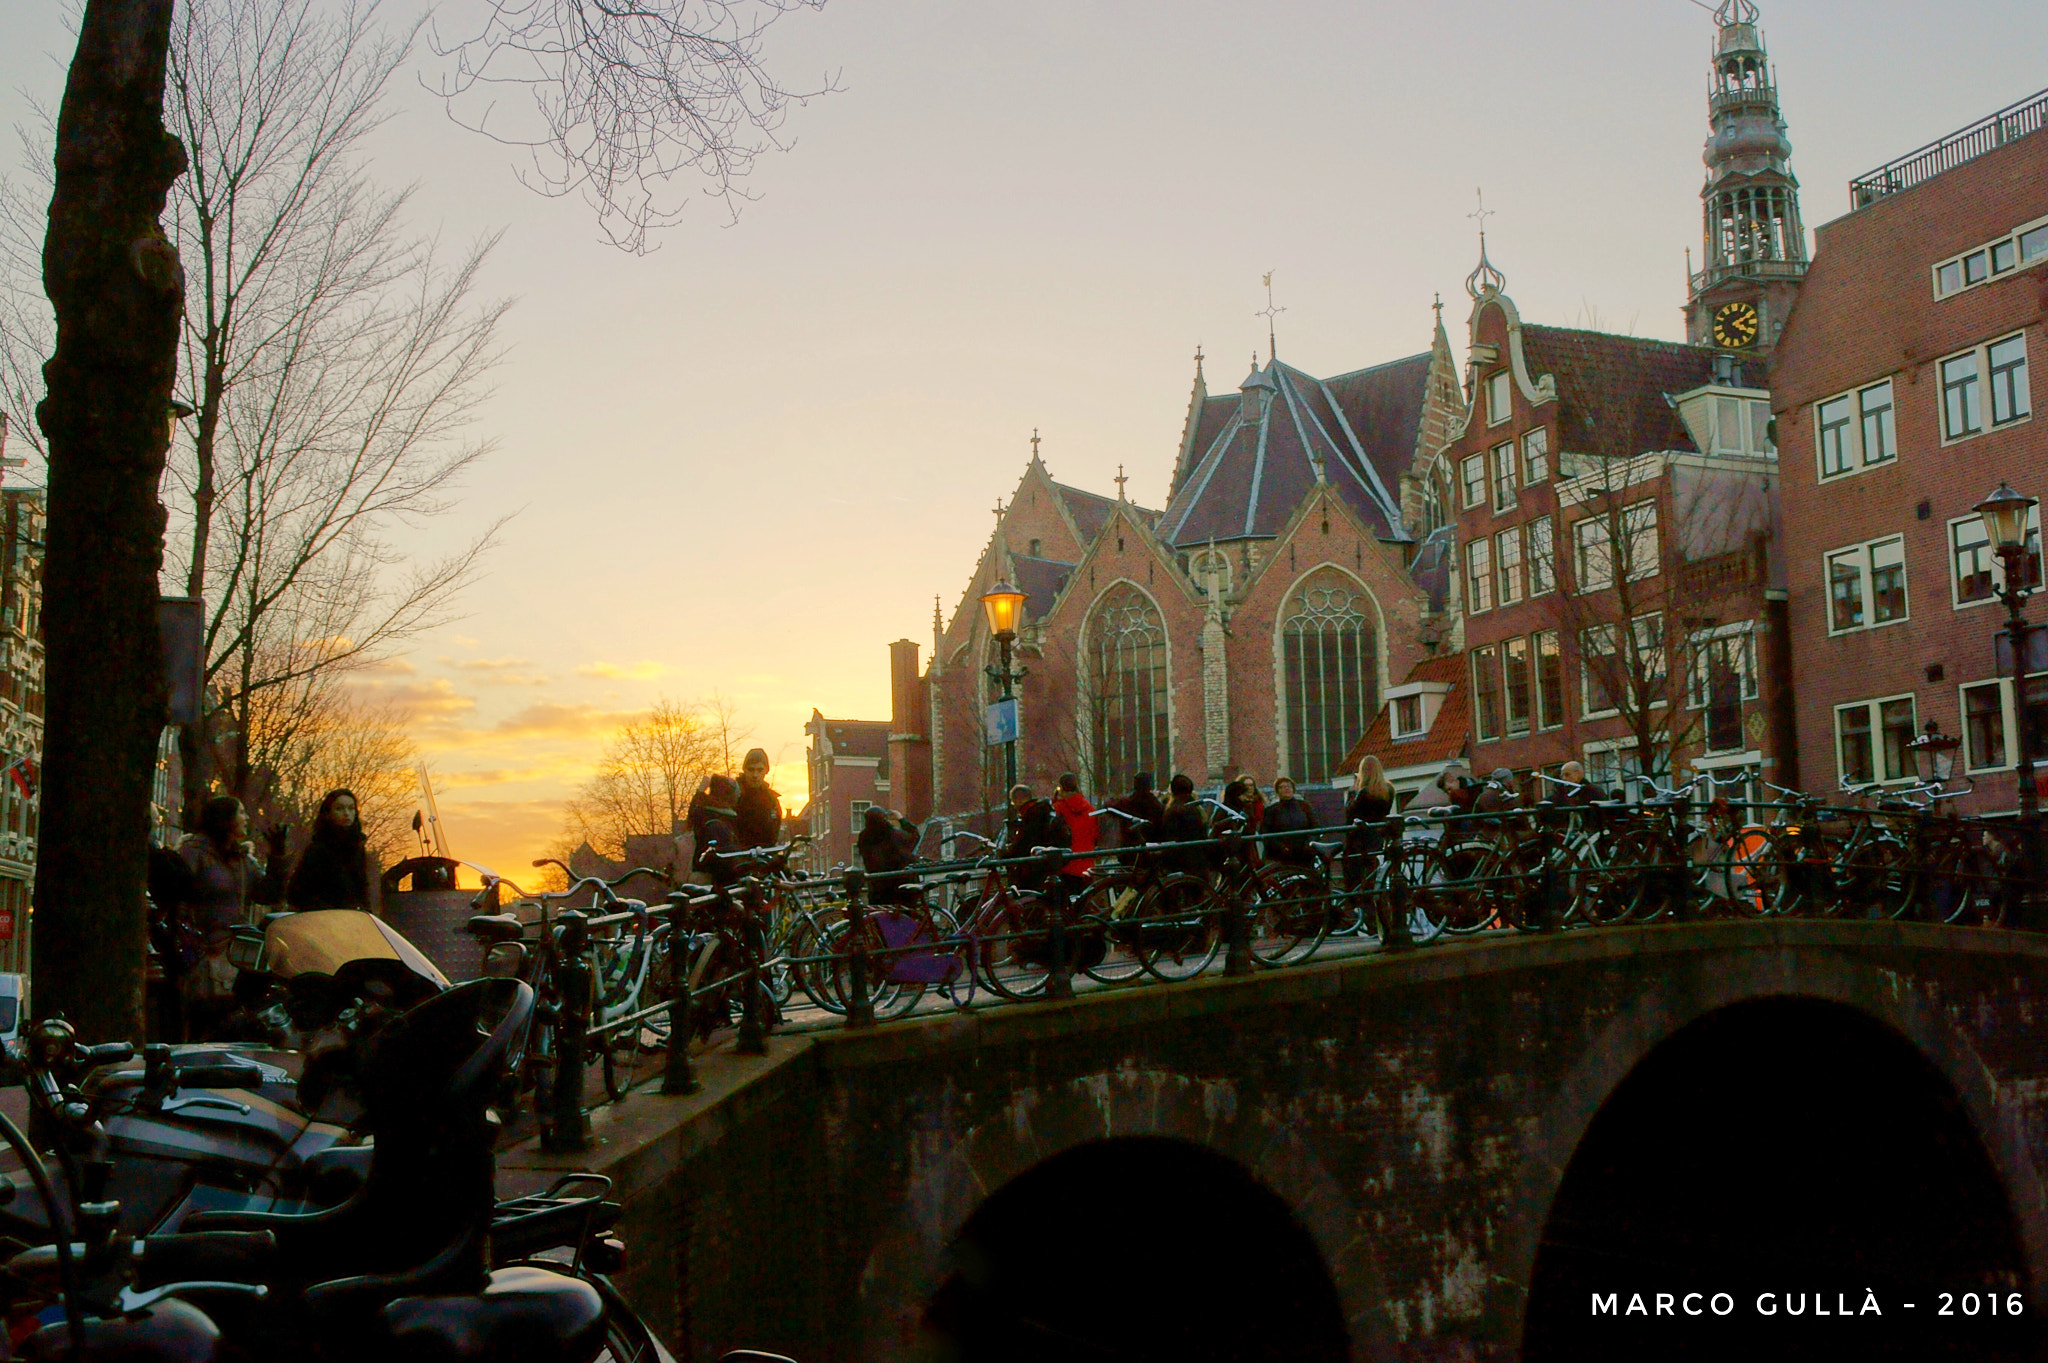 Sony SLT-A58 sample photo. Un tramonto in mezzo ai canali di amsterdam photography